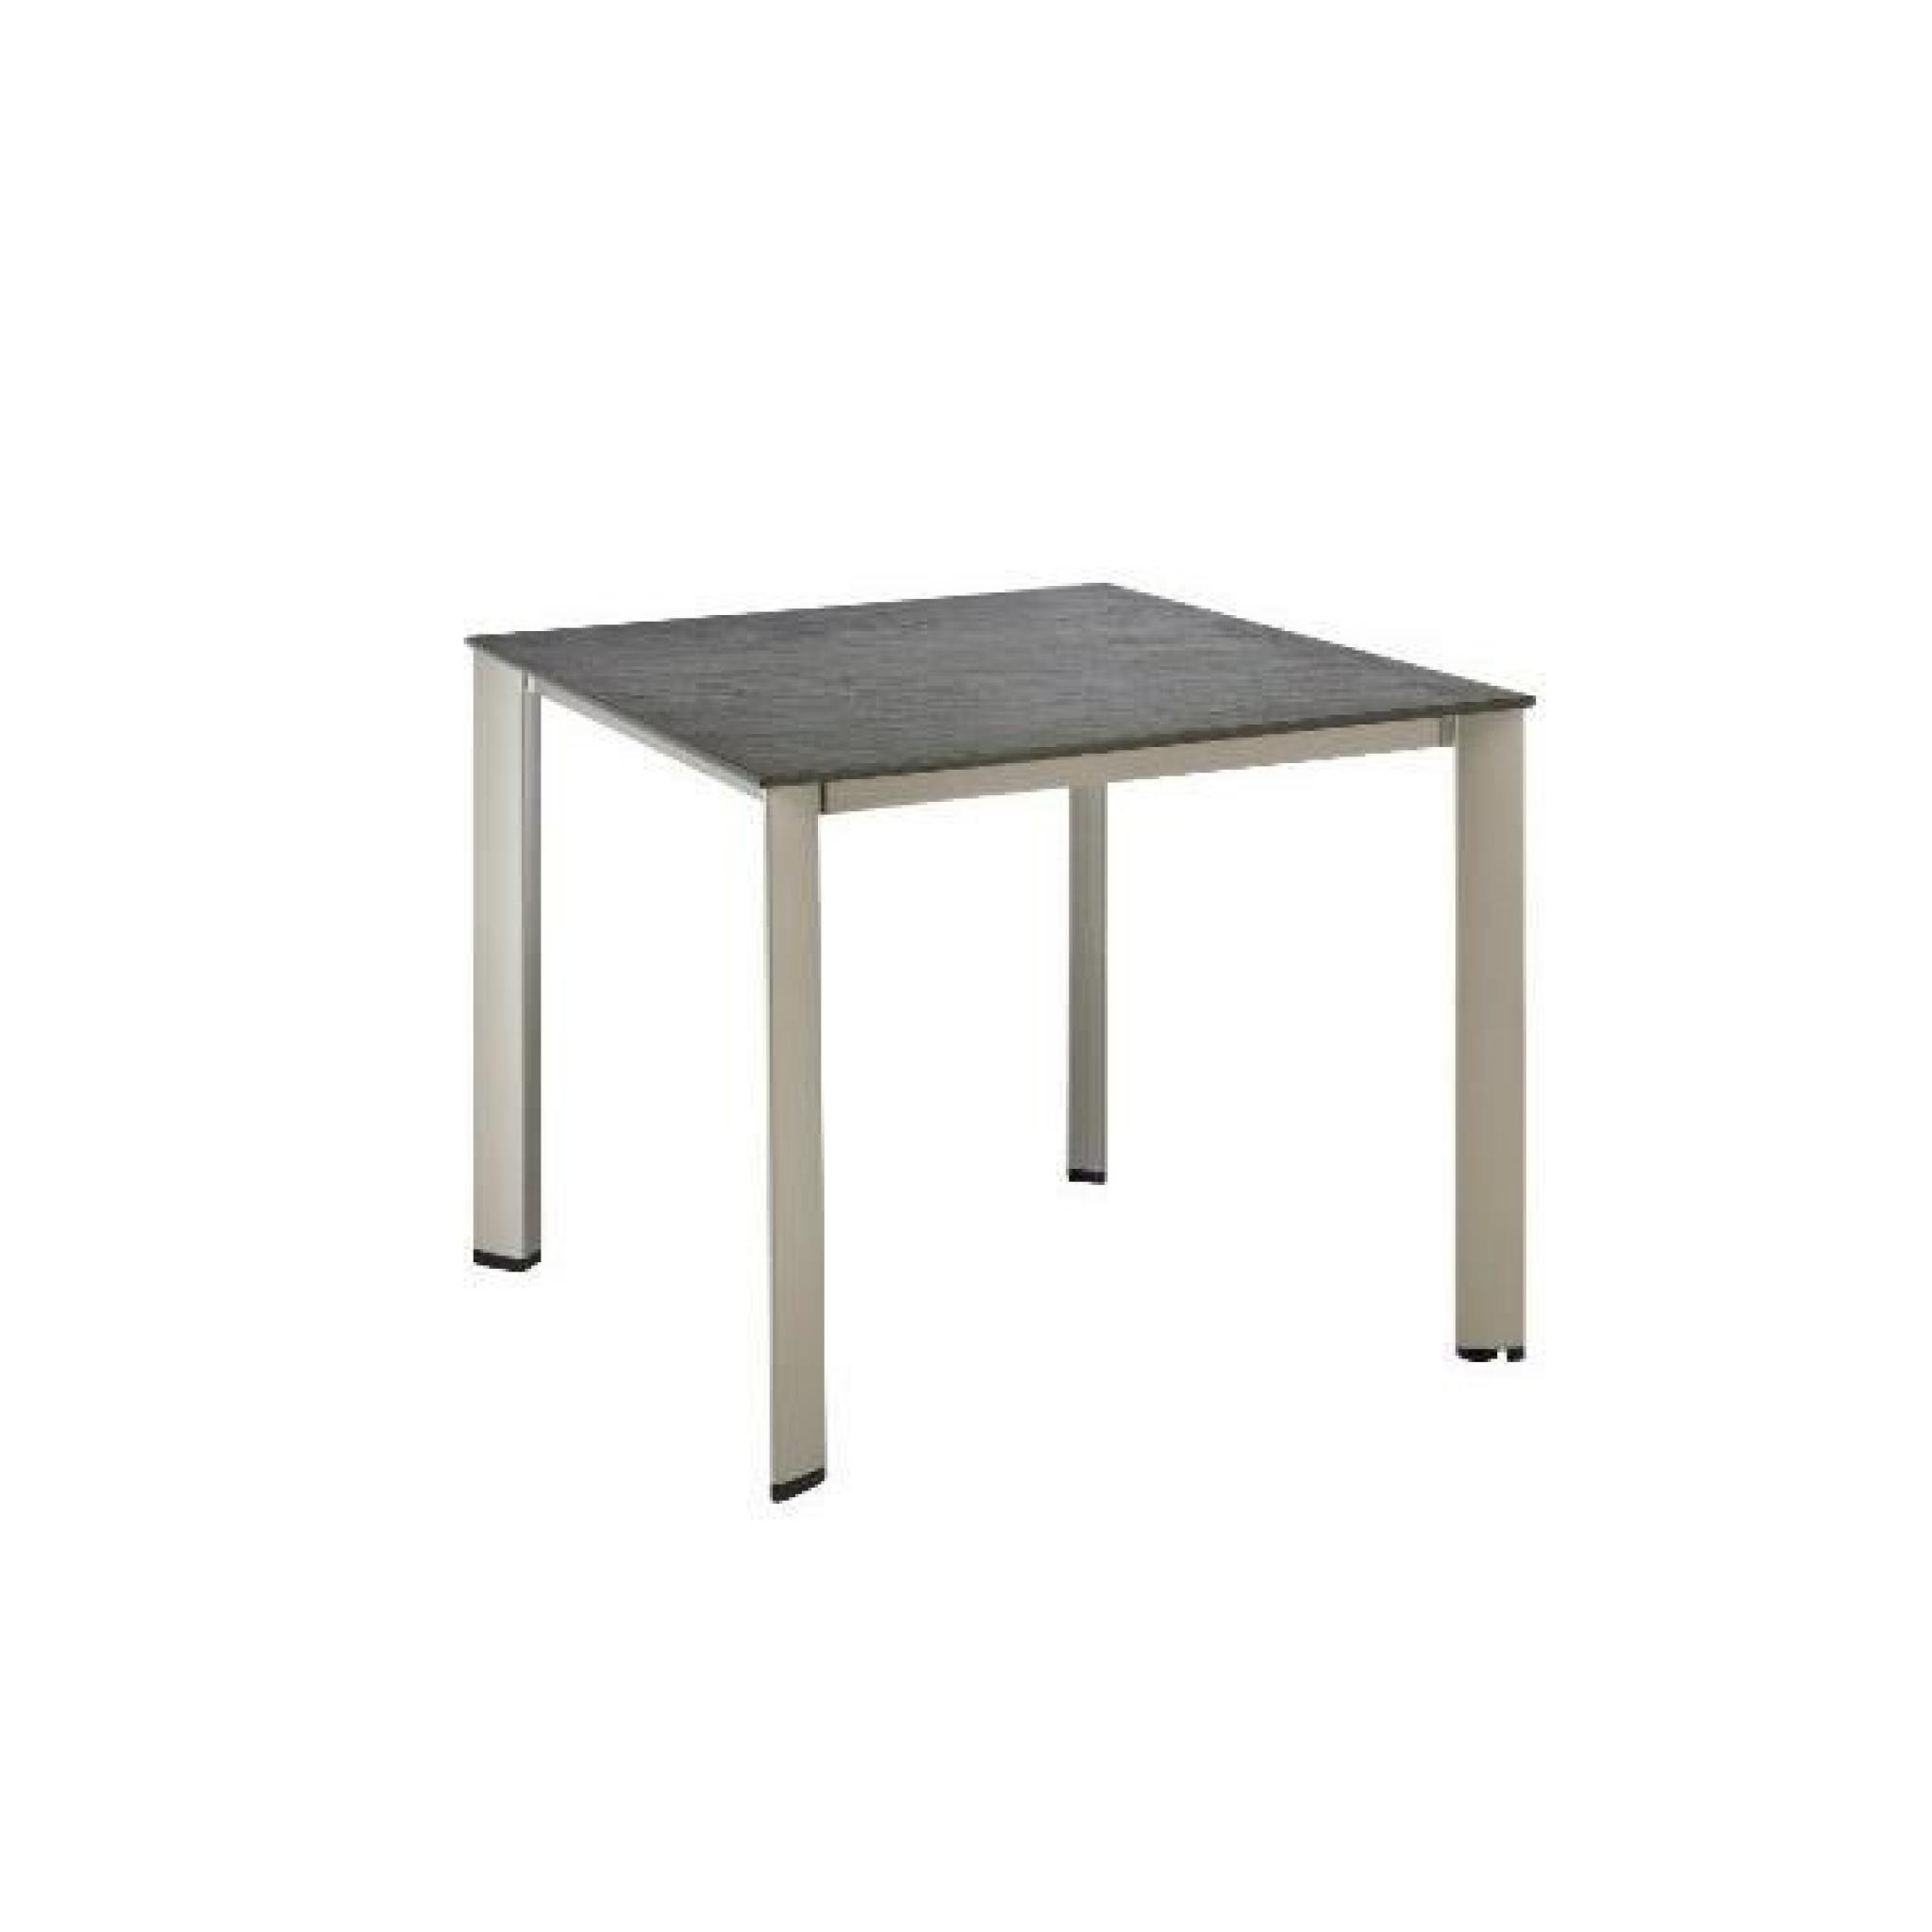 Table de jardin LOFT anthracite en aluminium et résine - l 220 x L 95 x H 74 cm pas cher